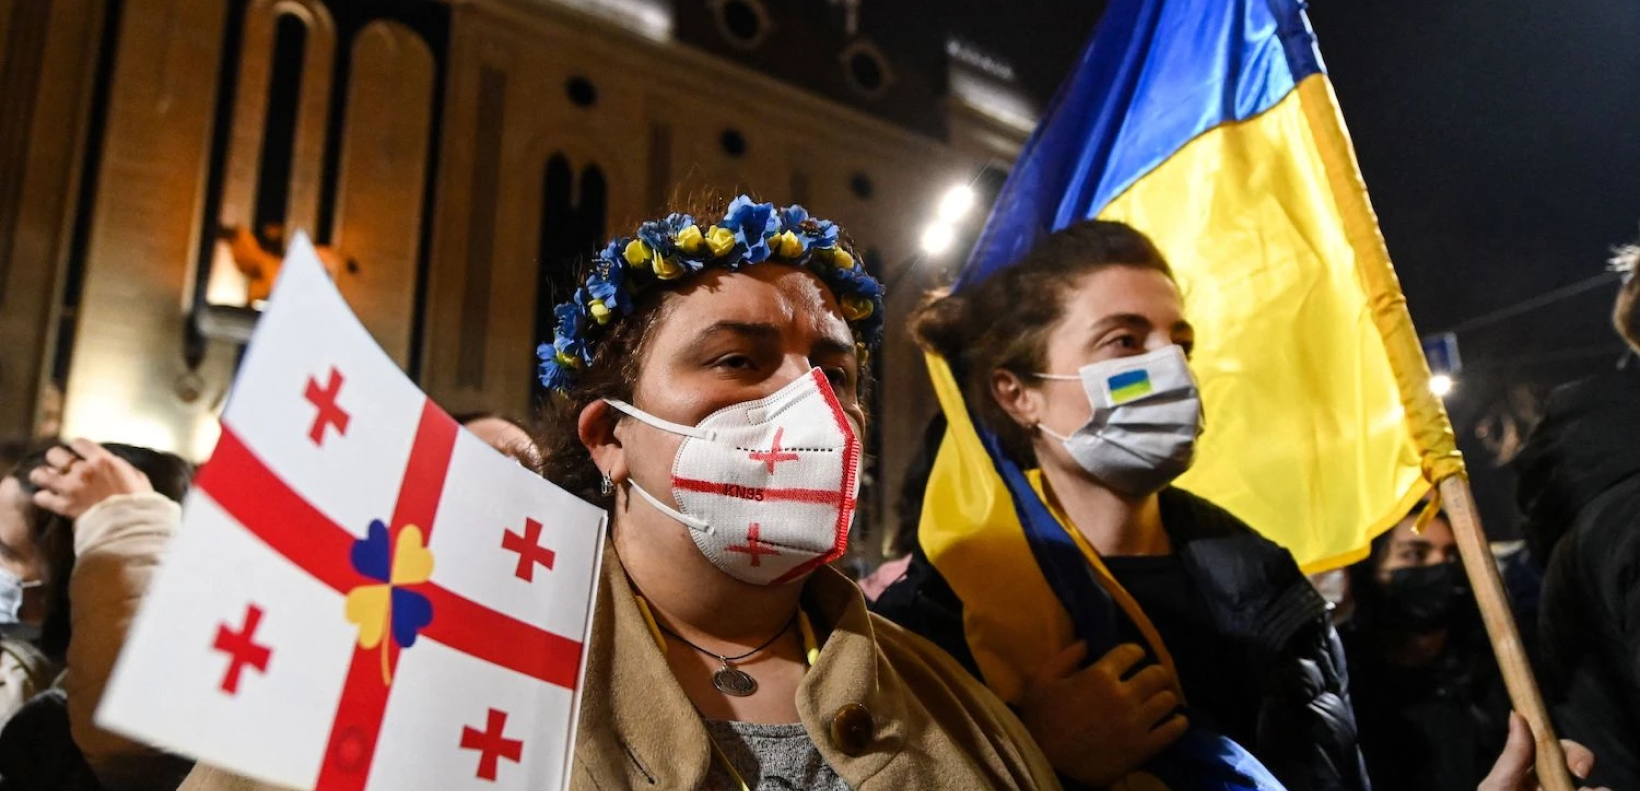 Ukrainian protestors